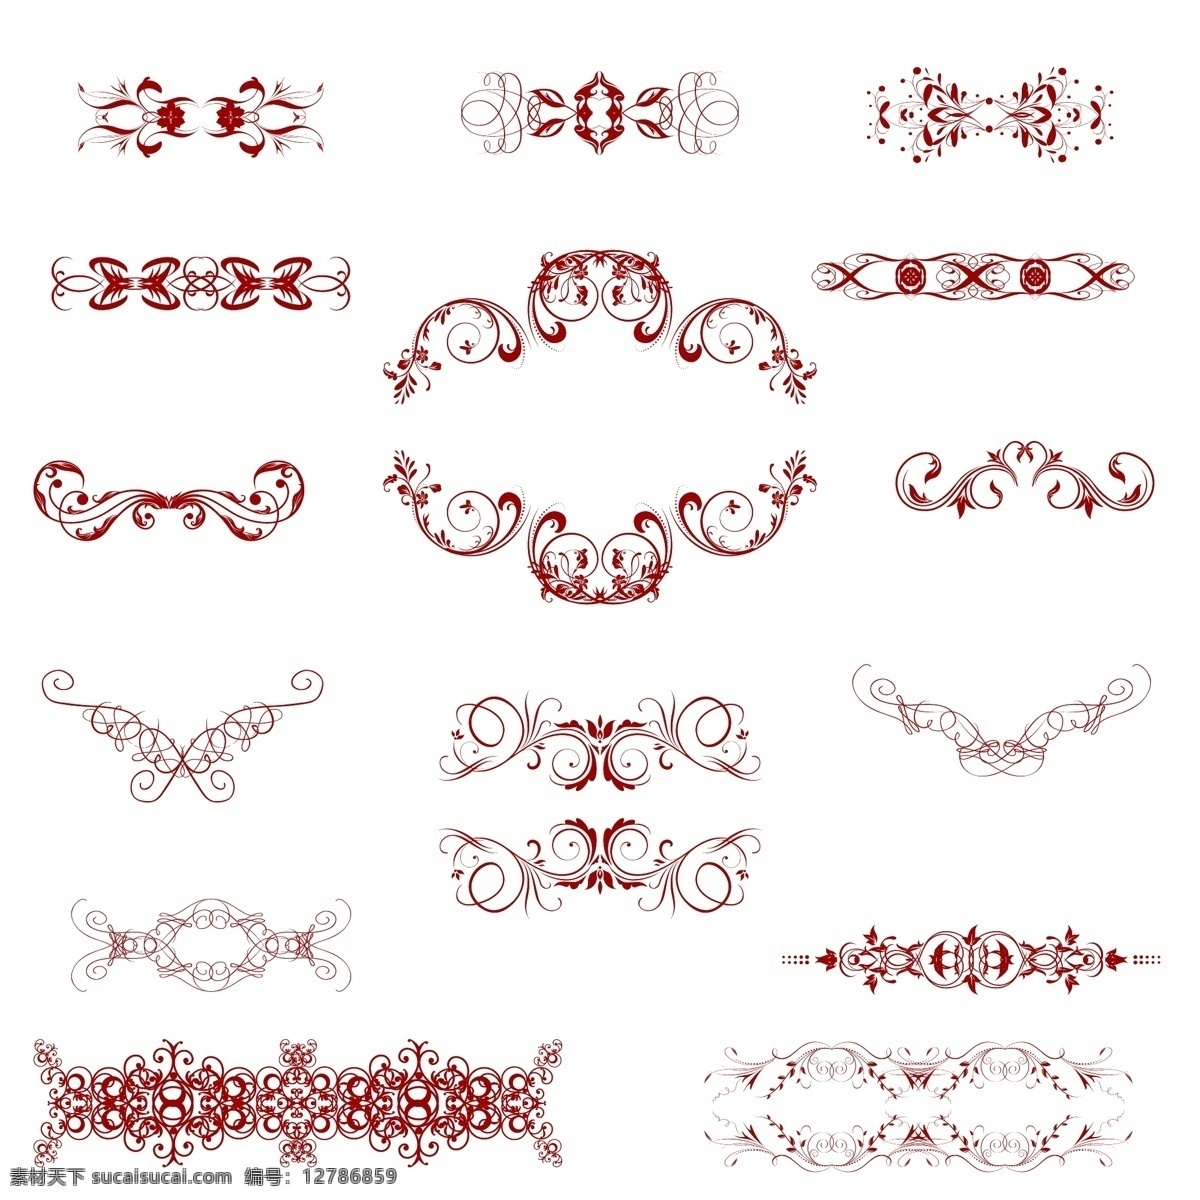 红色 婚礼 贺卡 欧式 花纹 元素 矢量素材 设计素材 背景素材